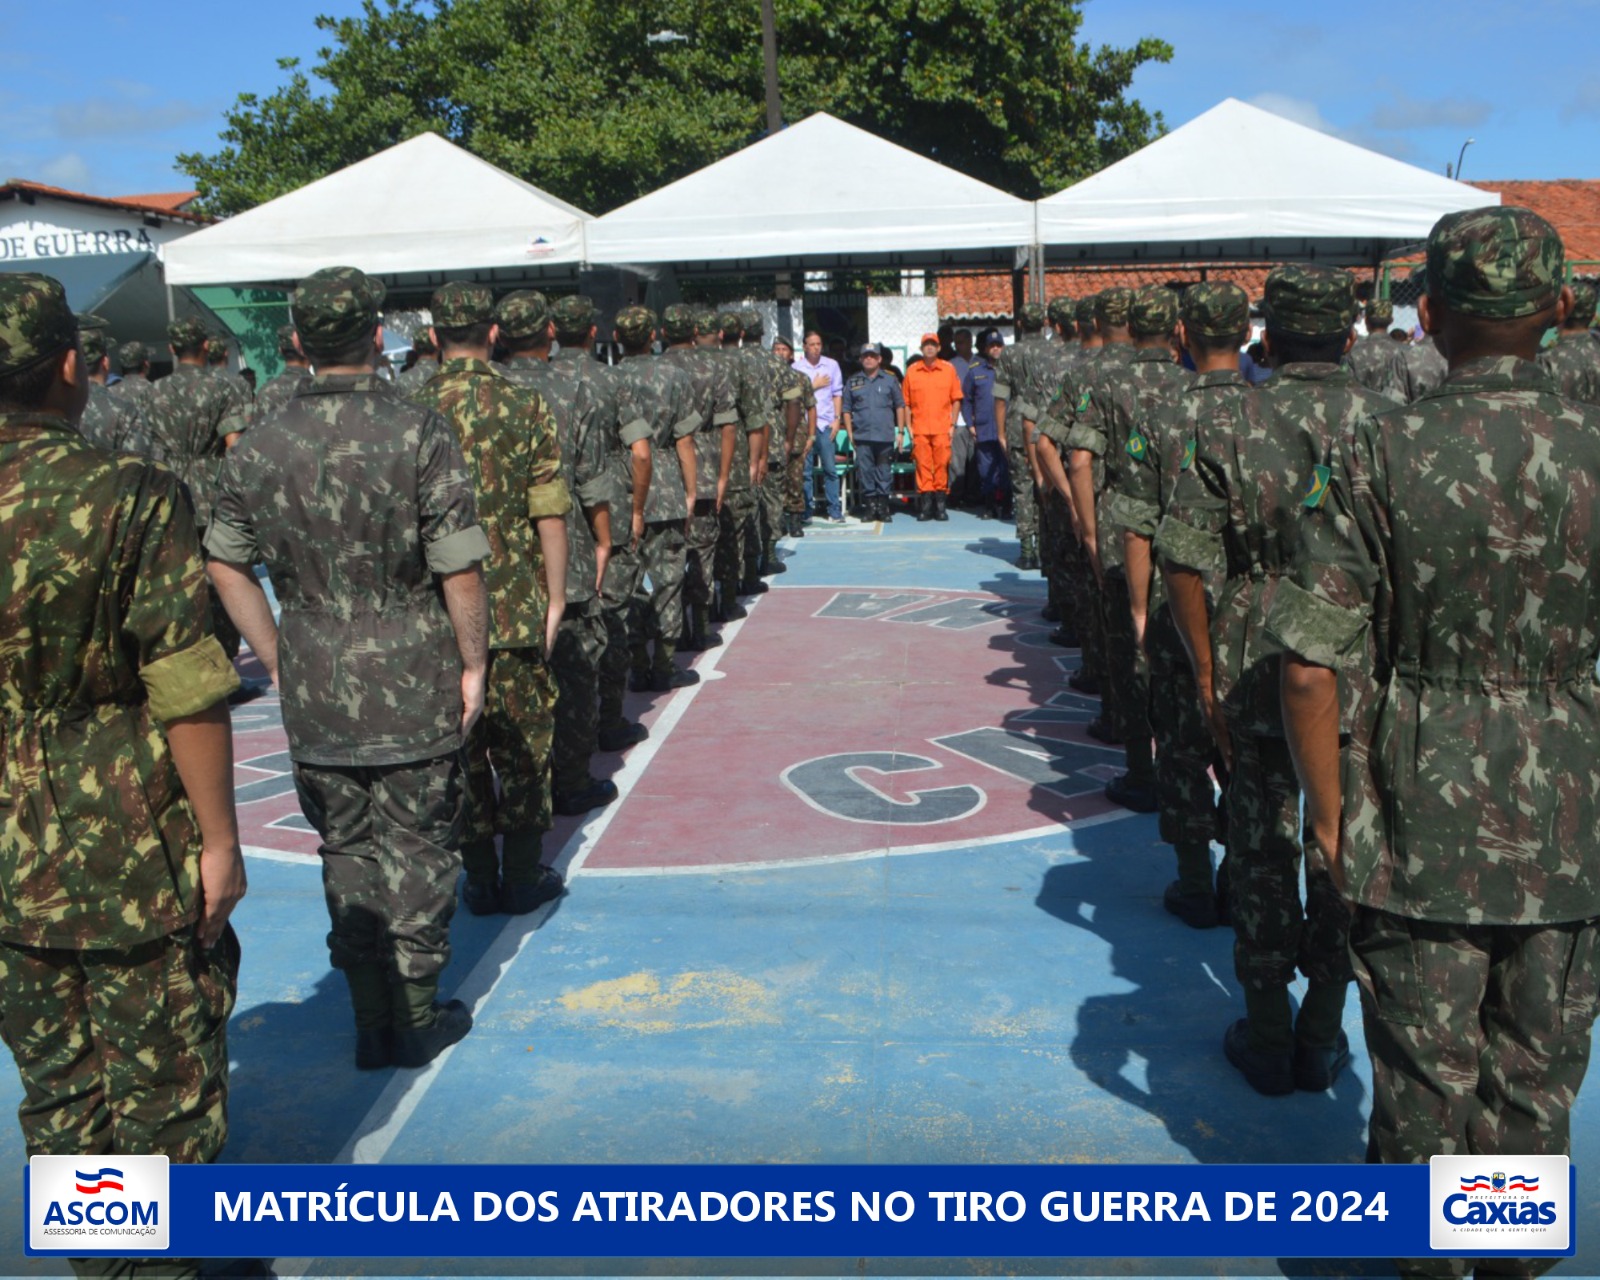 Prefeitura De Caxias Prestigia Matr Cula De Atiradores No Tiro De Guerra E Anuncia Quadra